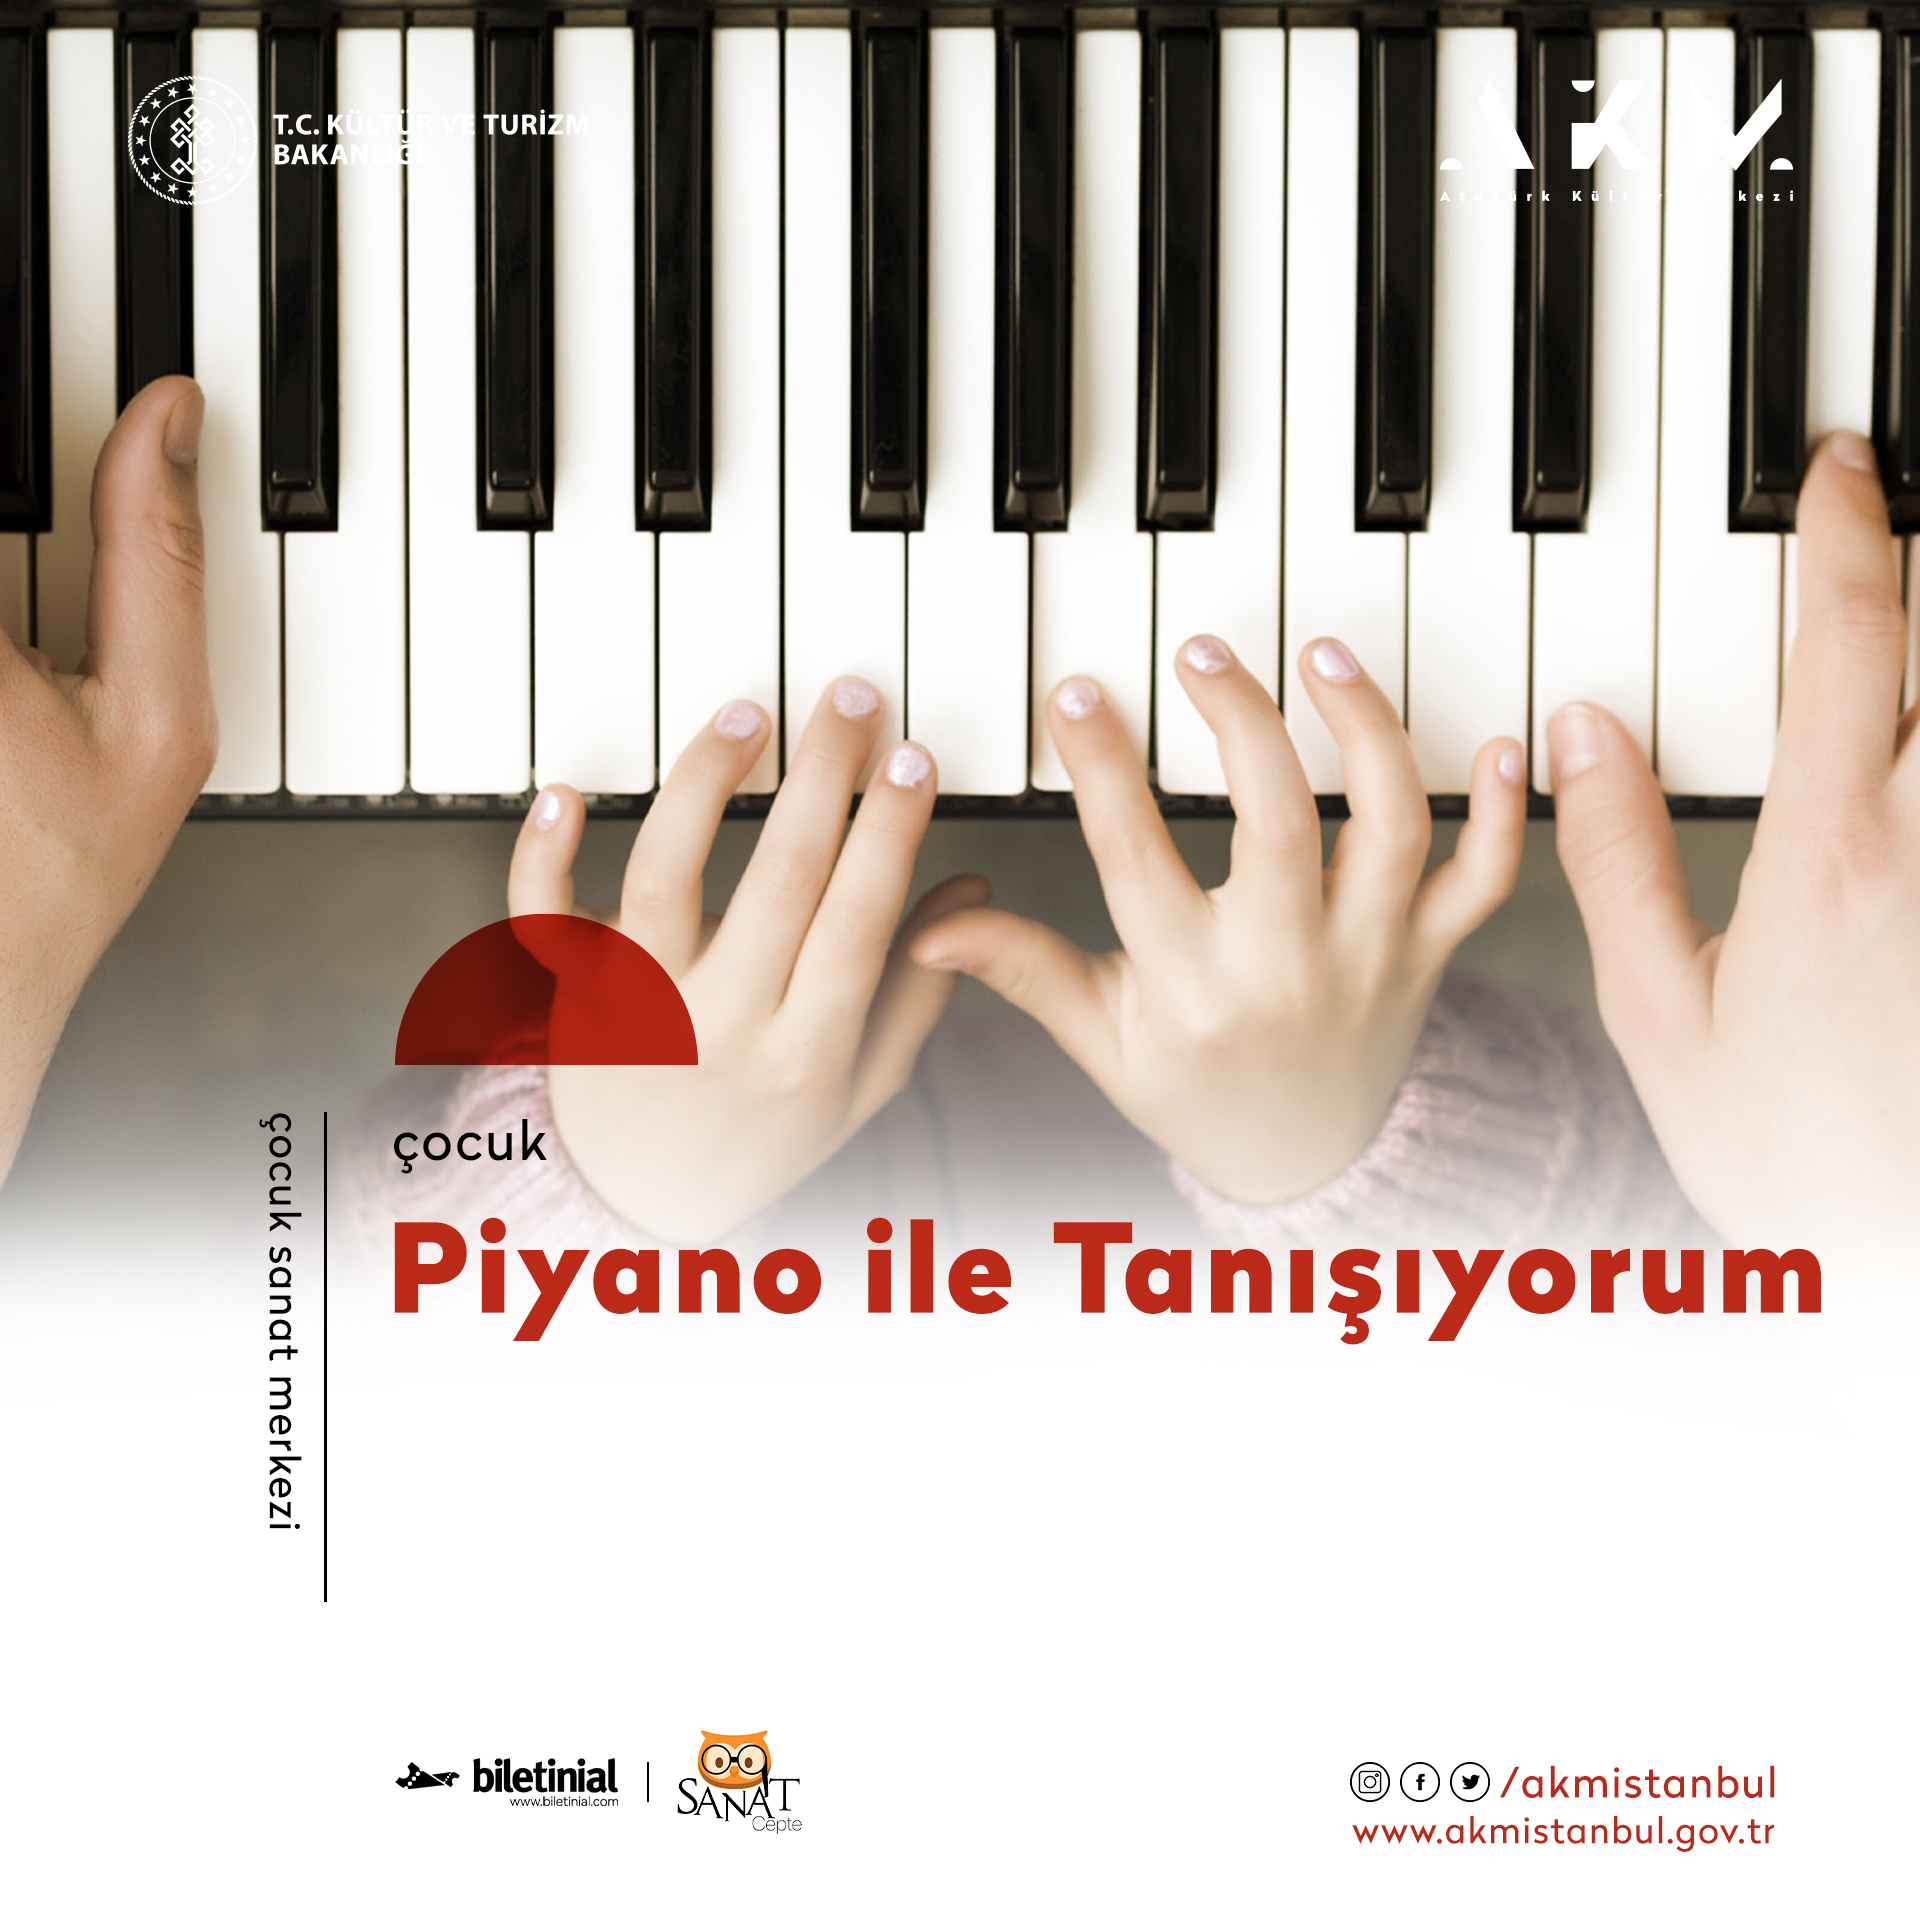 AKM’DE 10-24 Haziran'da çocuklar için piyano atölyesi başlıyor